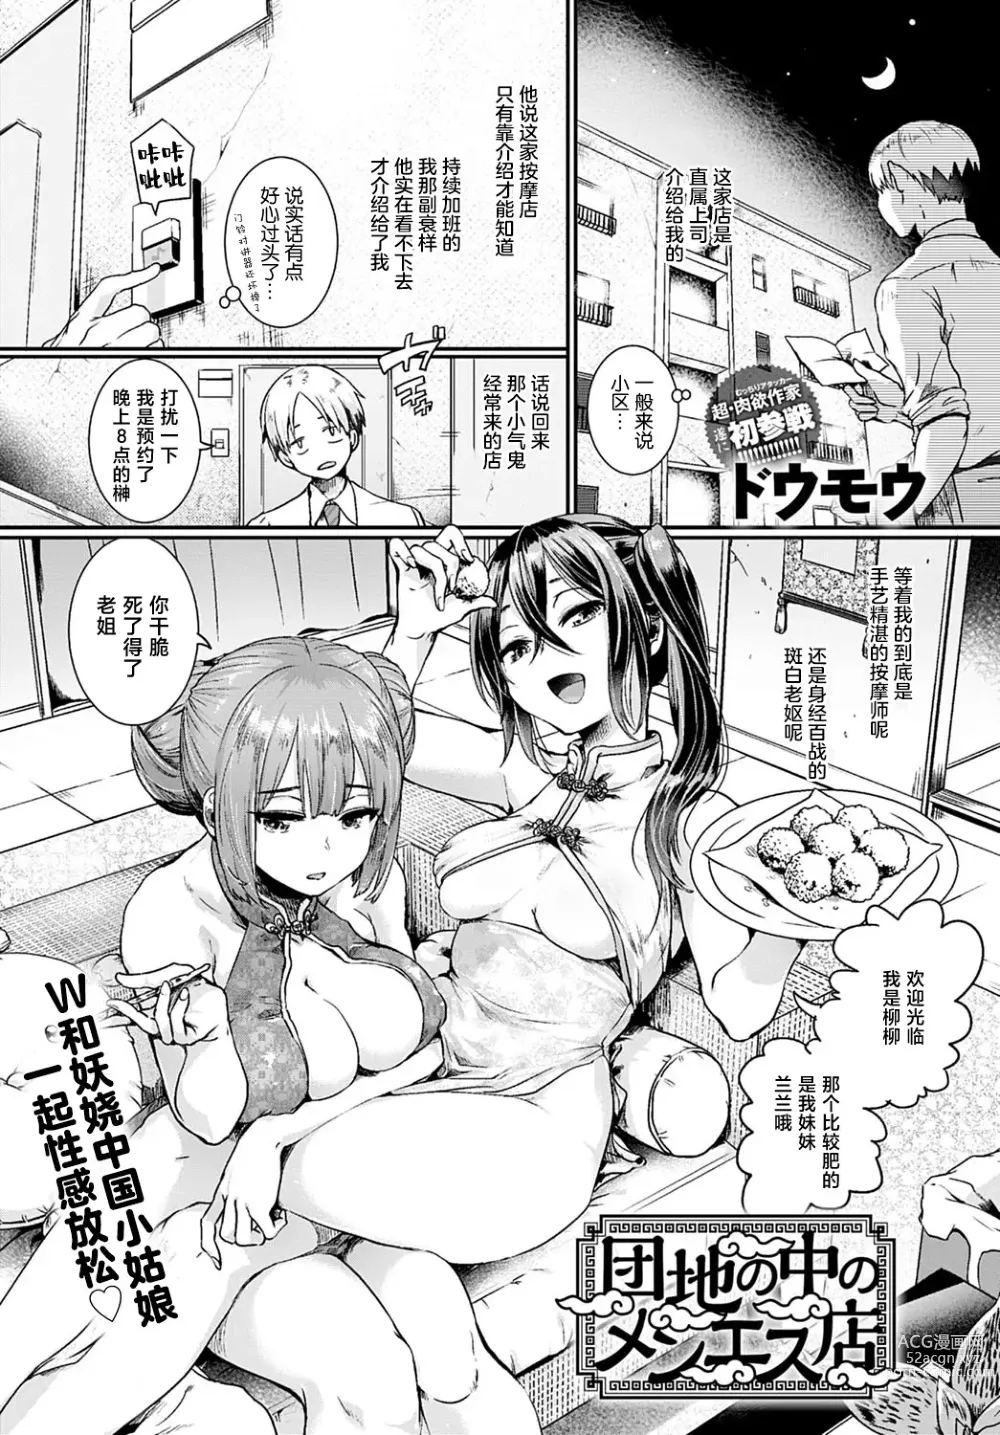 Page 1 of manga 小区里的男士美容店